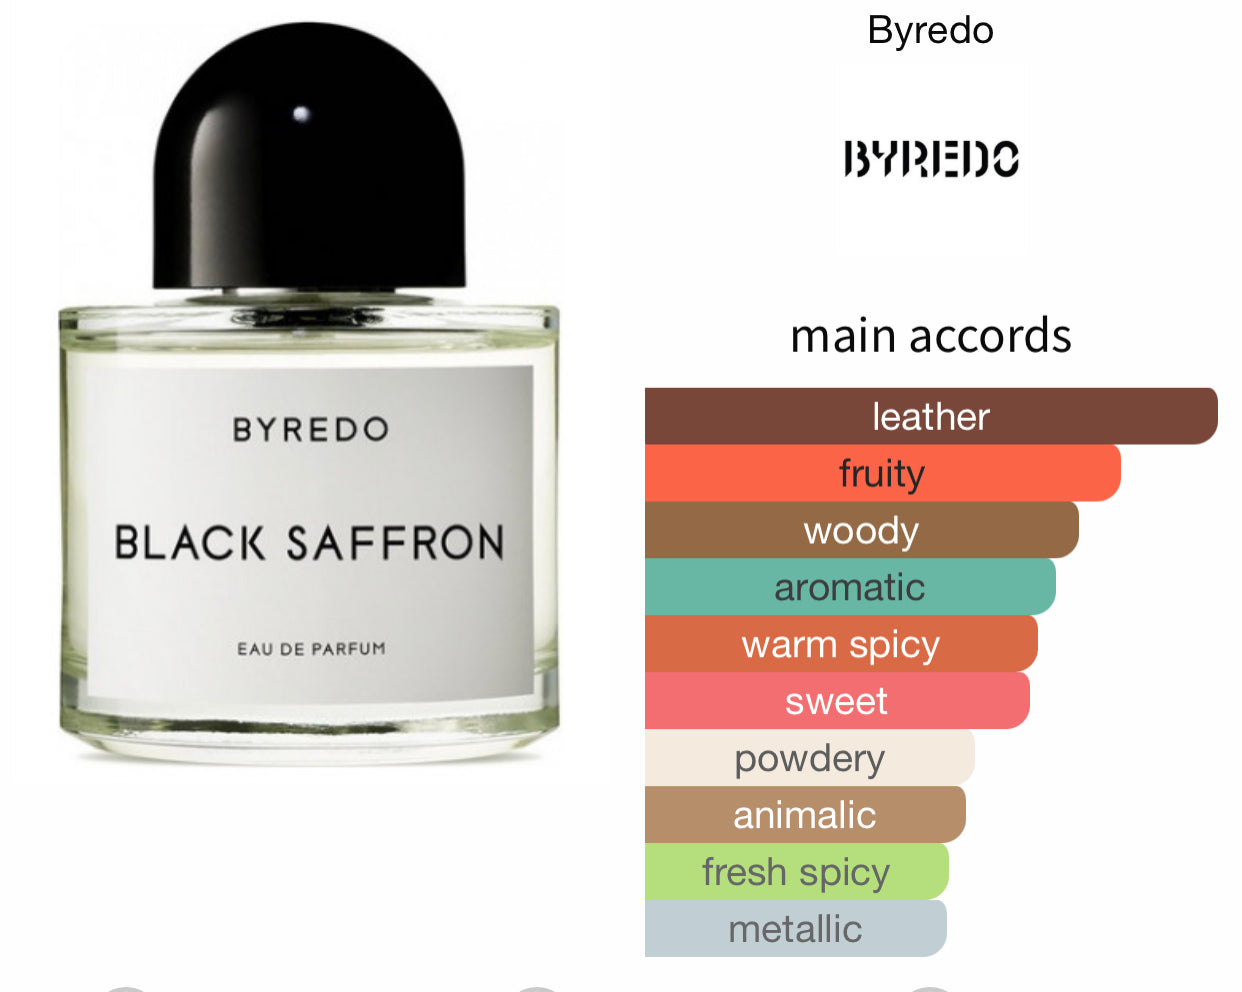 Inspired by Black Saffron Eau De Parfum